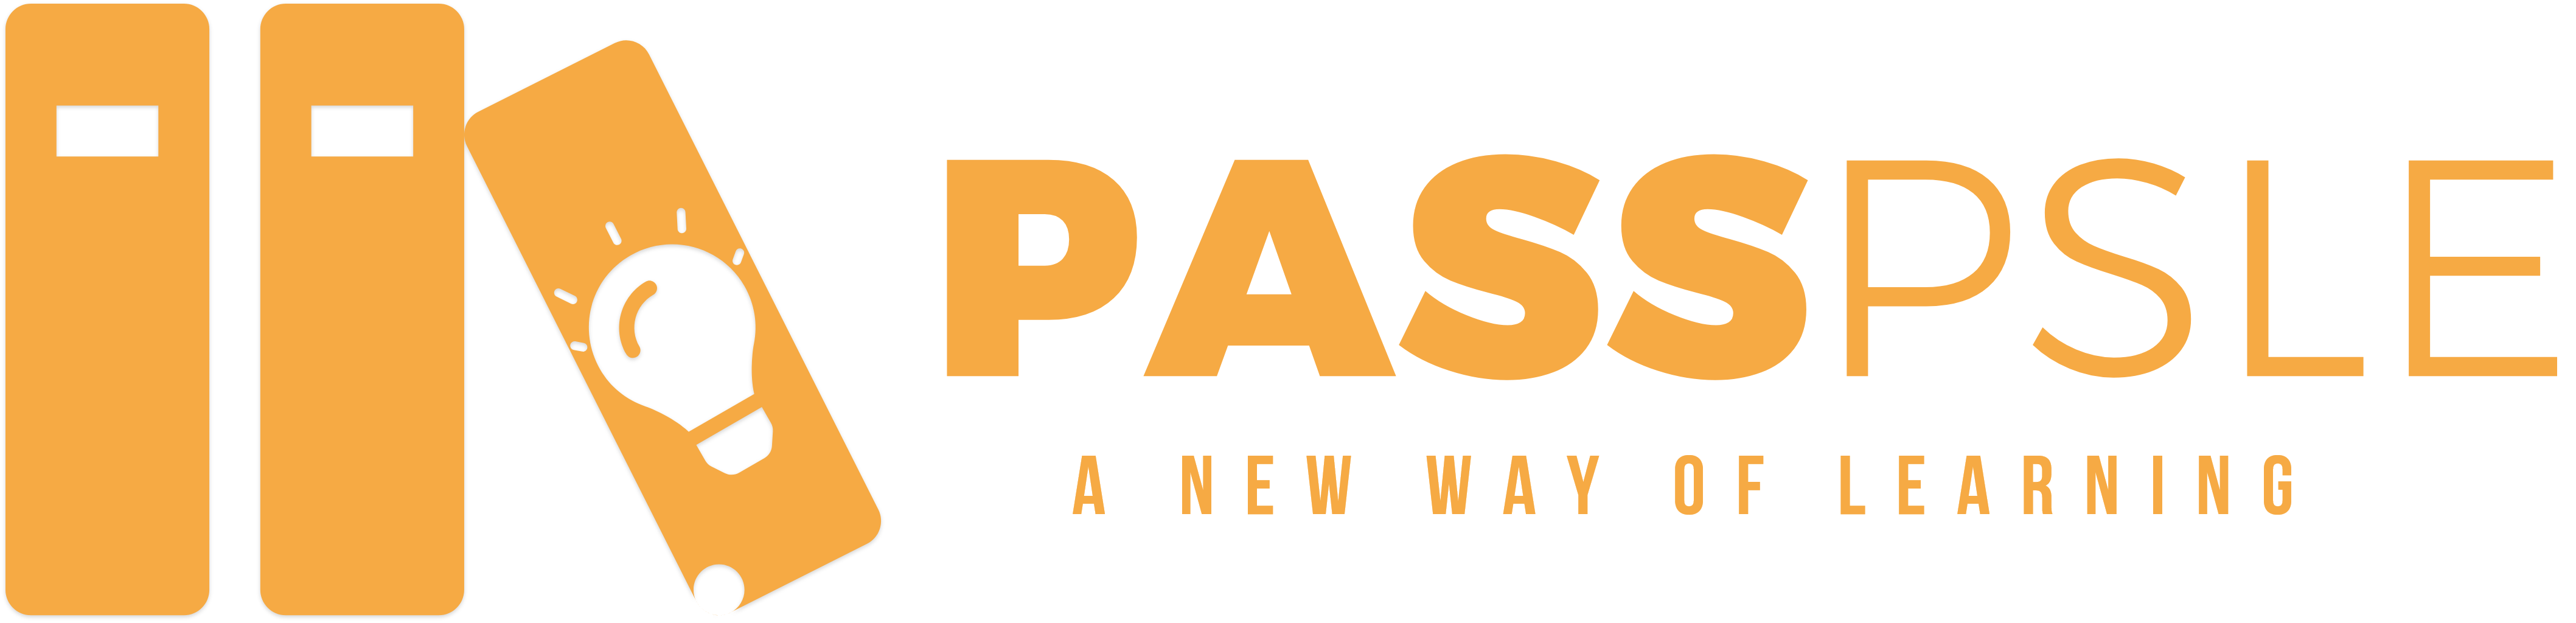 Pass PSLE